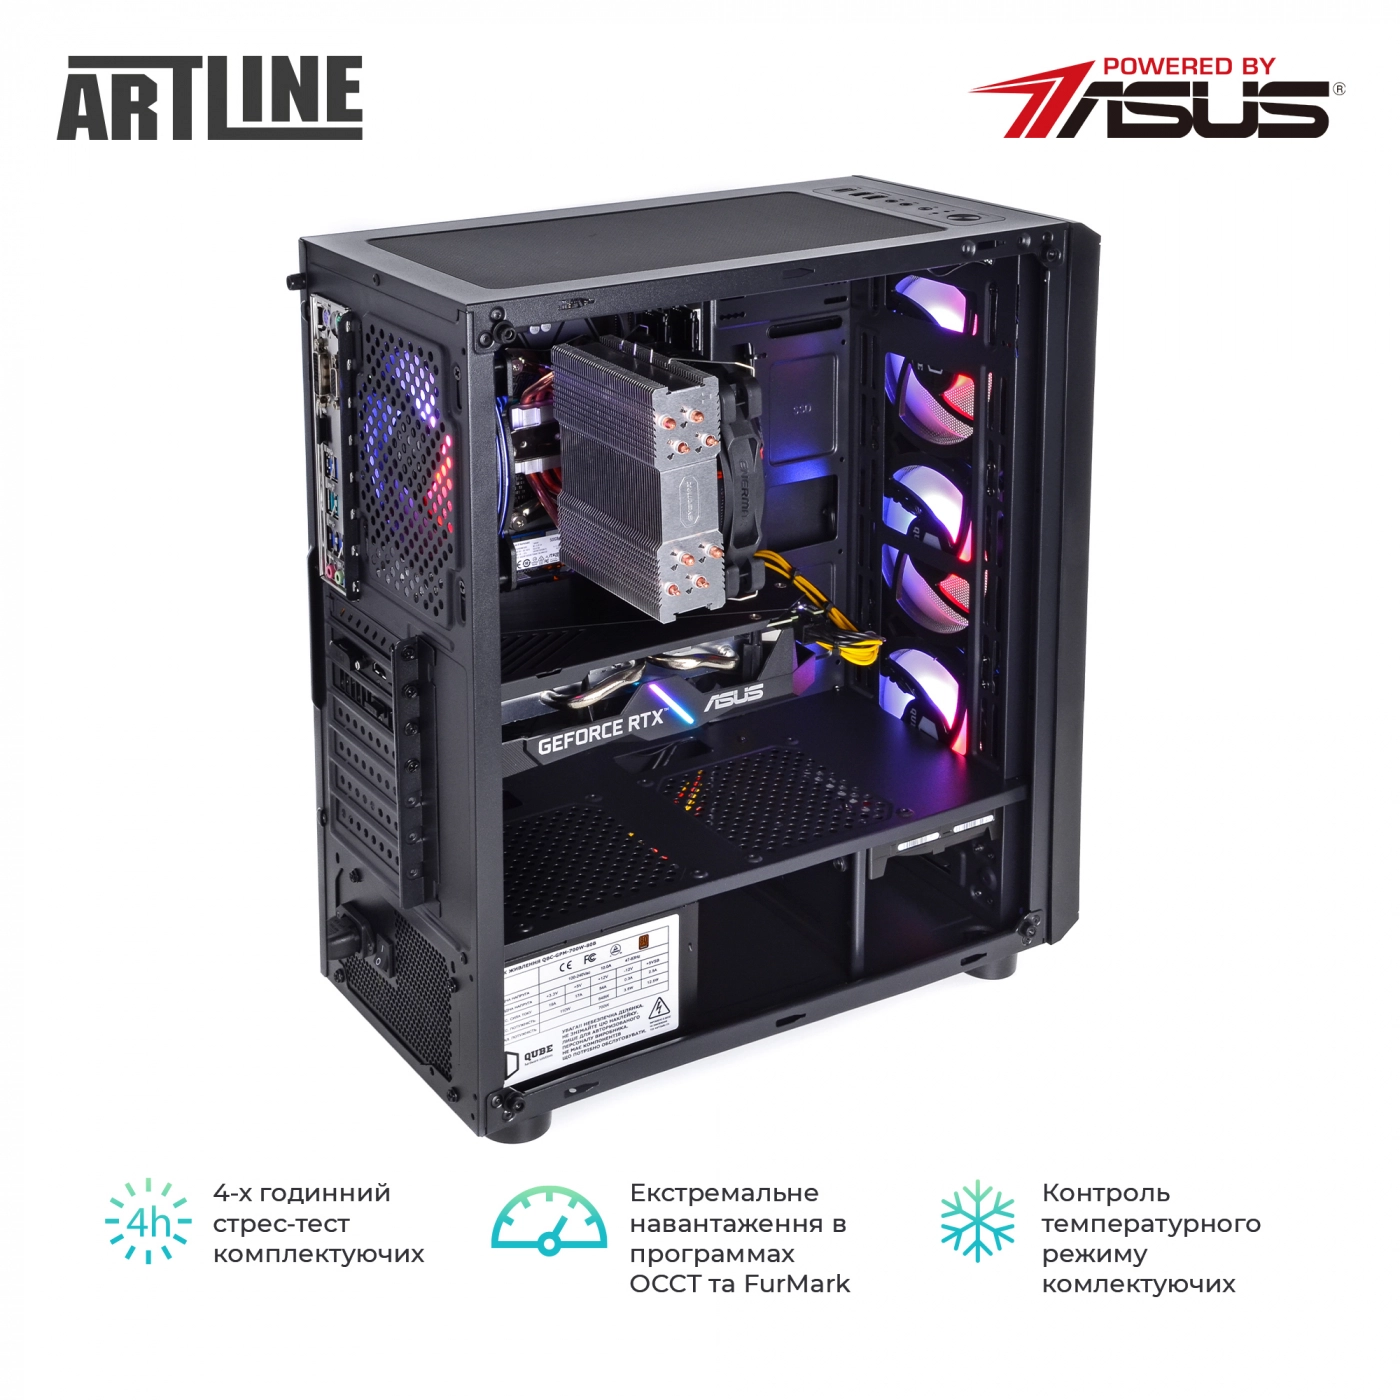 Купить Компьютер ARTLINE Gaming X75v26 - фото 9